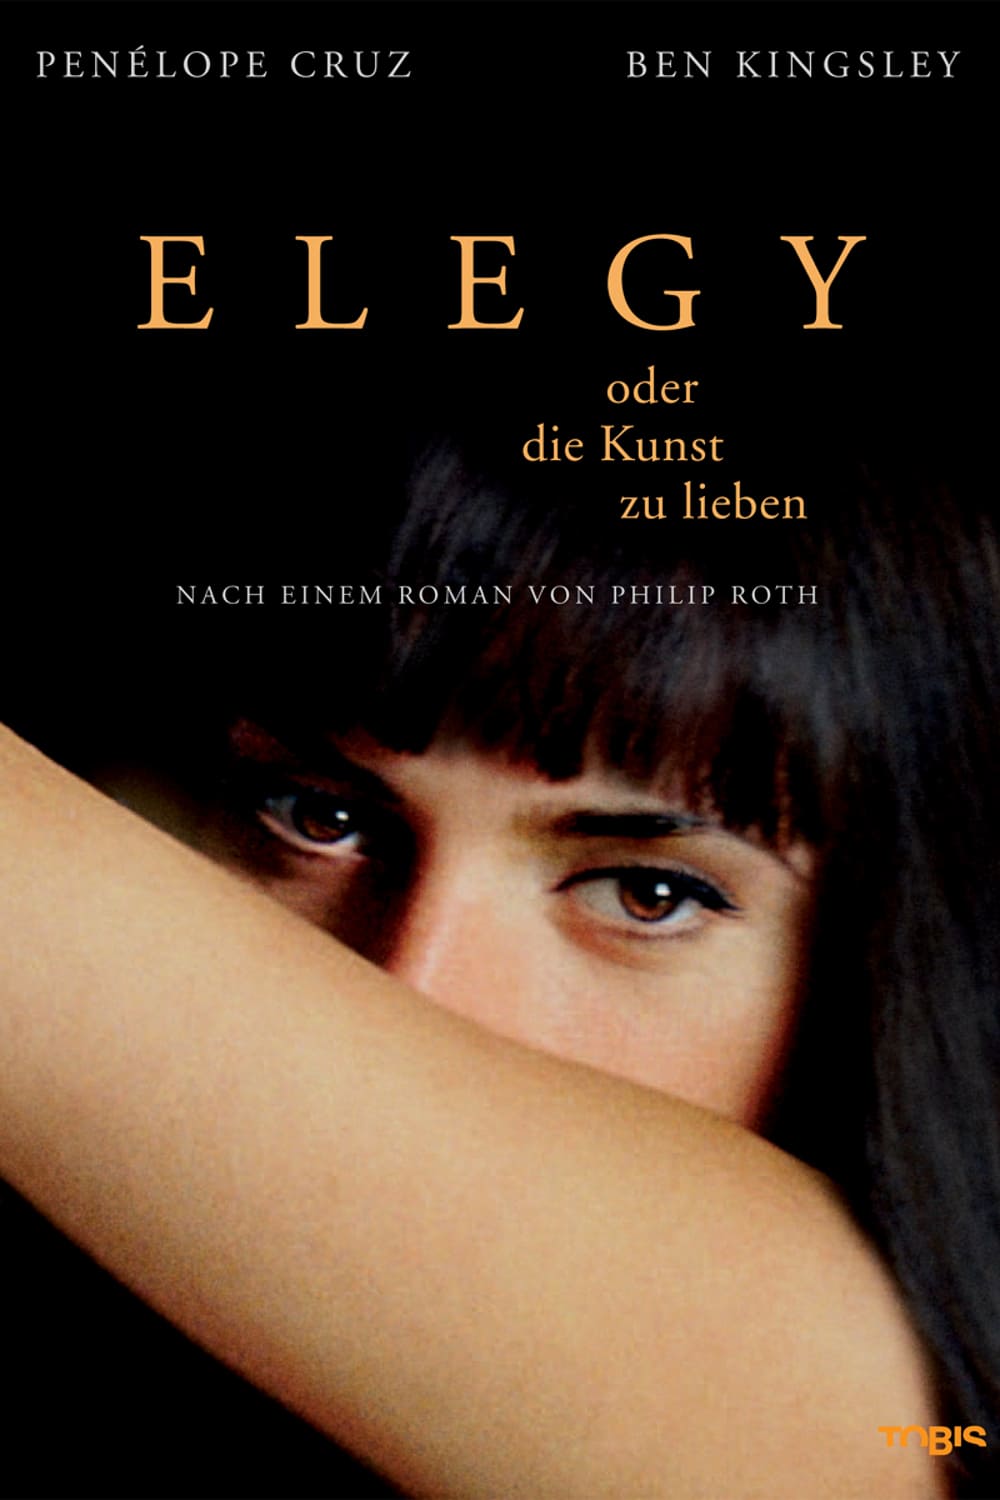 Plakat von "Elegy oder die Kunst zu lieben"